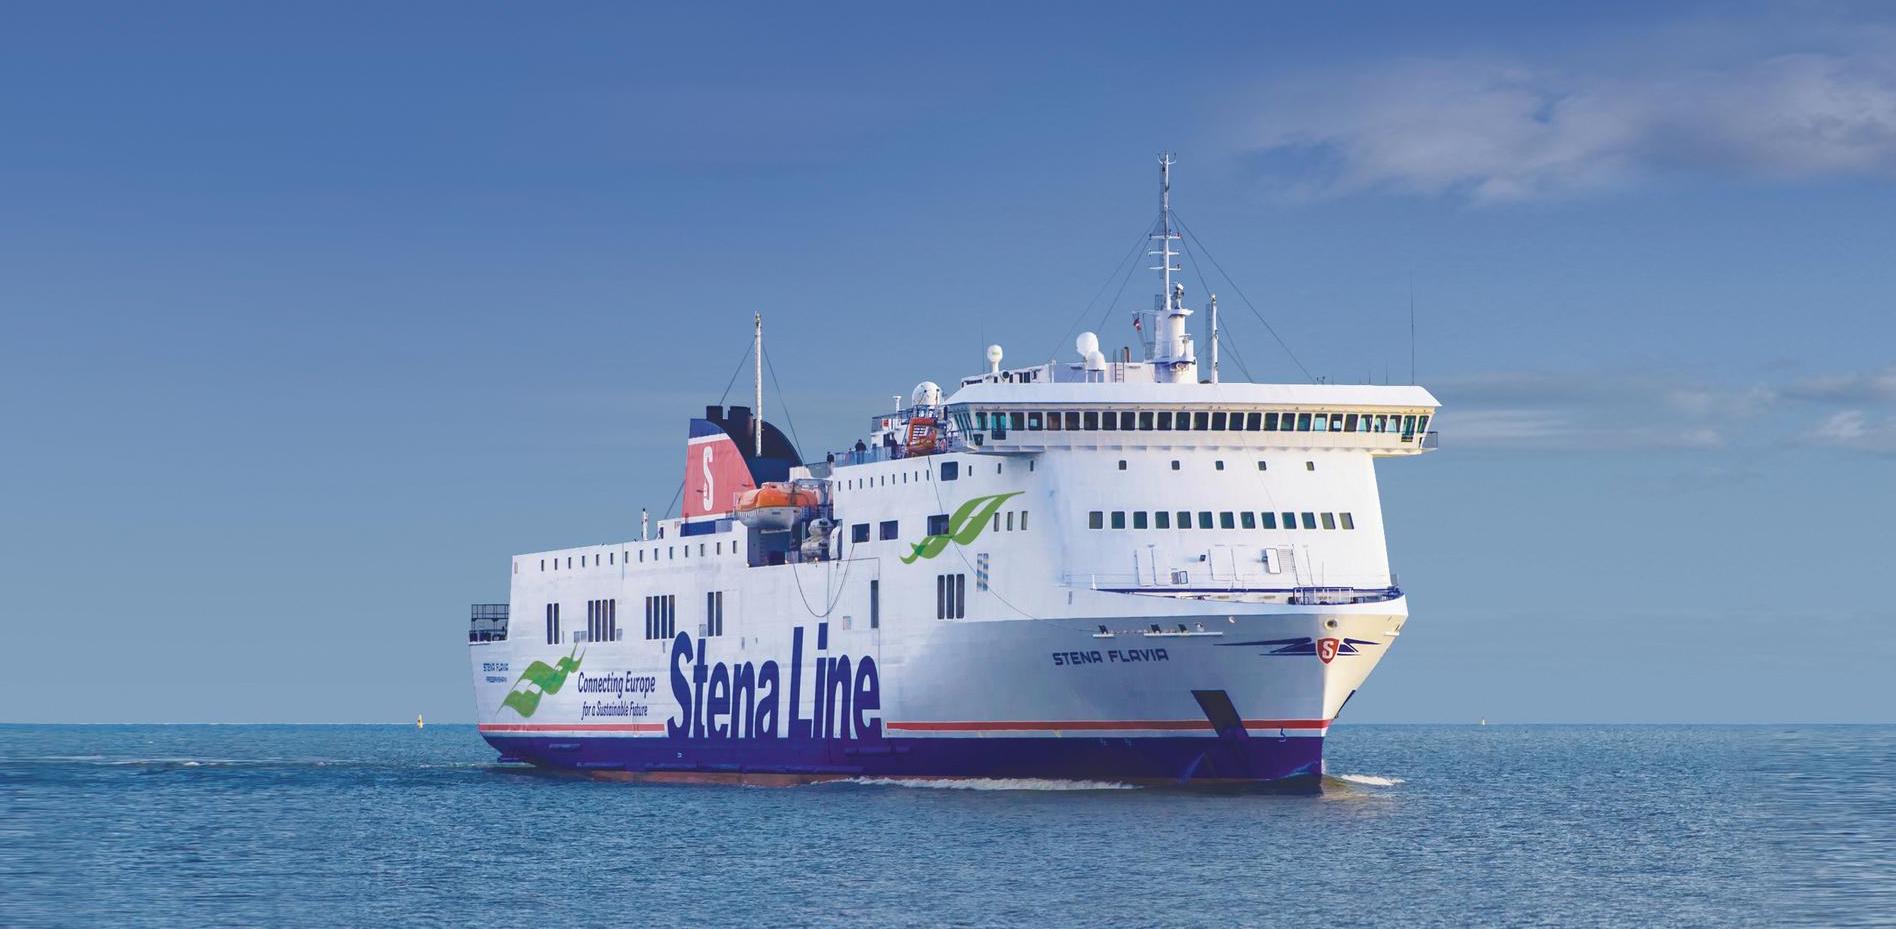 Stena Line - Stena Flavia 船の写真